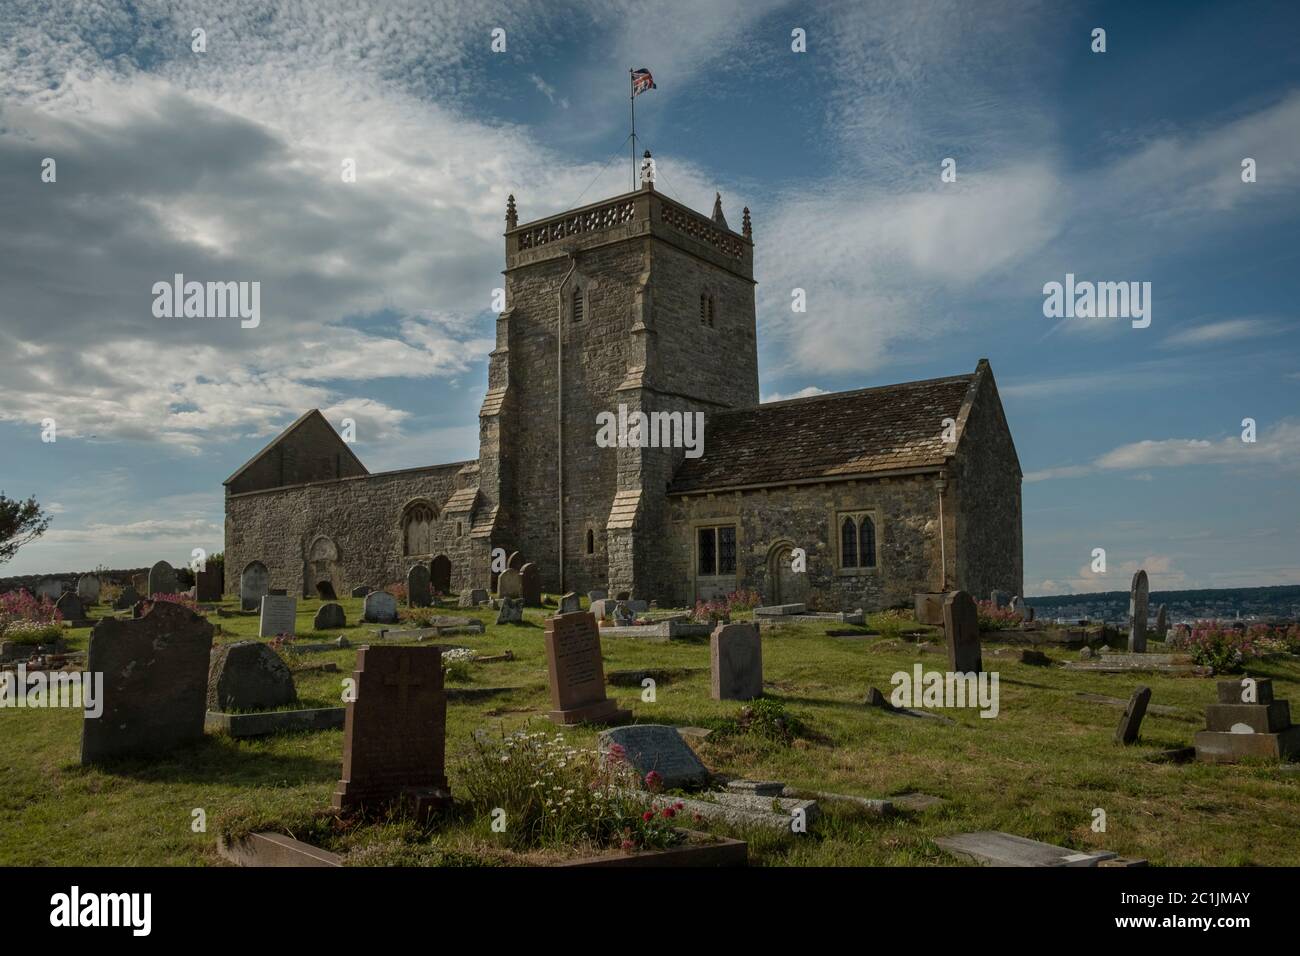 La vieille église de Saint-Nicolas en amont, Weston-Super-Mare, Royaume-Uni, également connue sous le nom d'église sur la colline. Banque D'Images